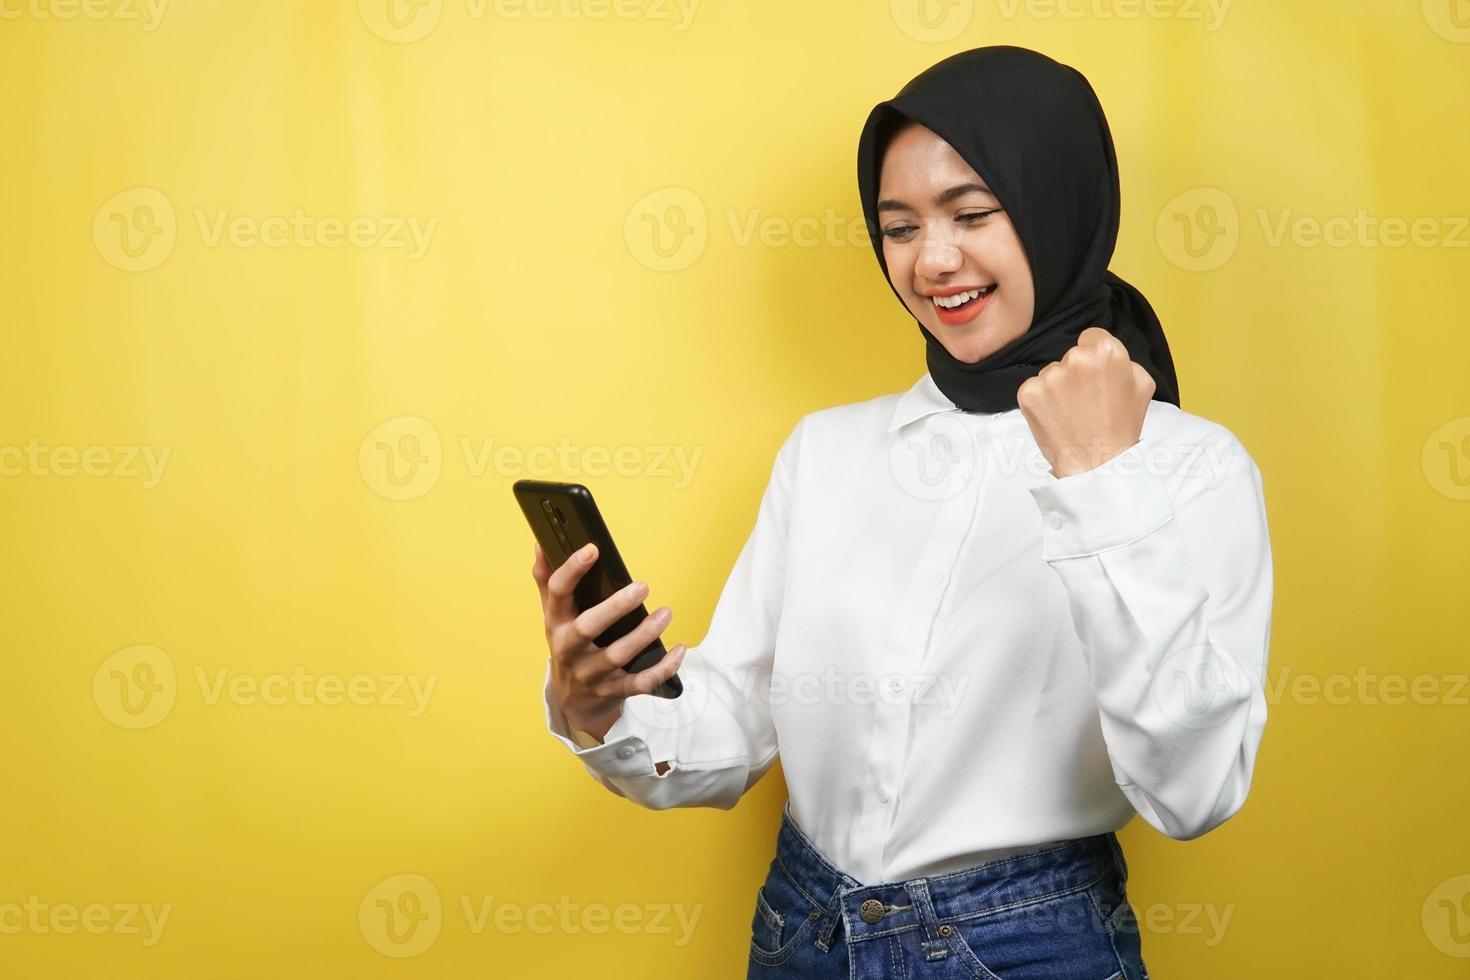 schöne junge asiatische muslimische frau, die selbstbewusst, enthusiastisch und fröhlich lächelt, mit den händen, die smartphone halten, die hände ballen, stanzen, sieg, erfolg, gute arbeit, einzeln auf gelbem hintergrund foto